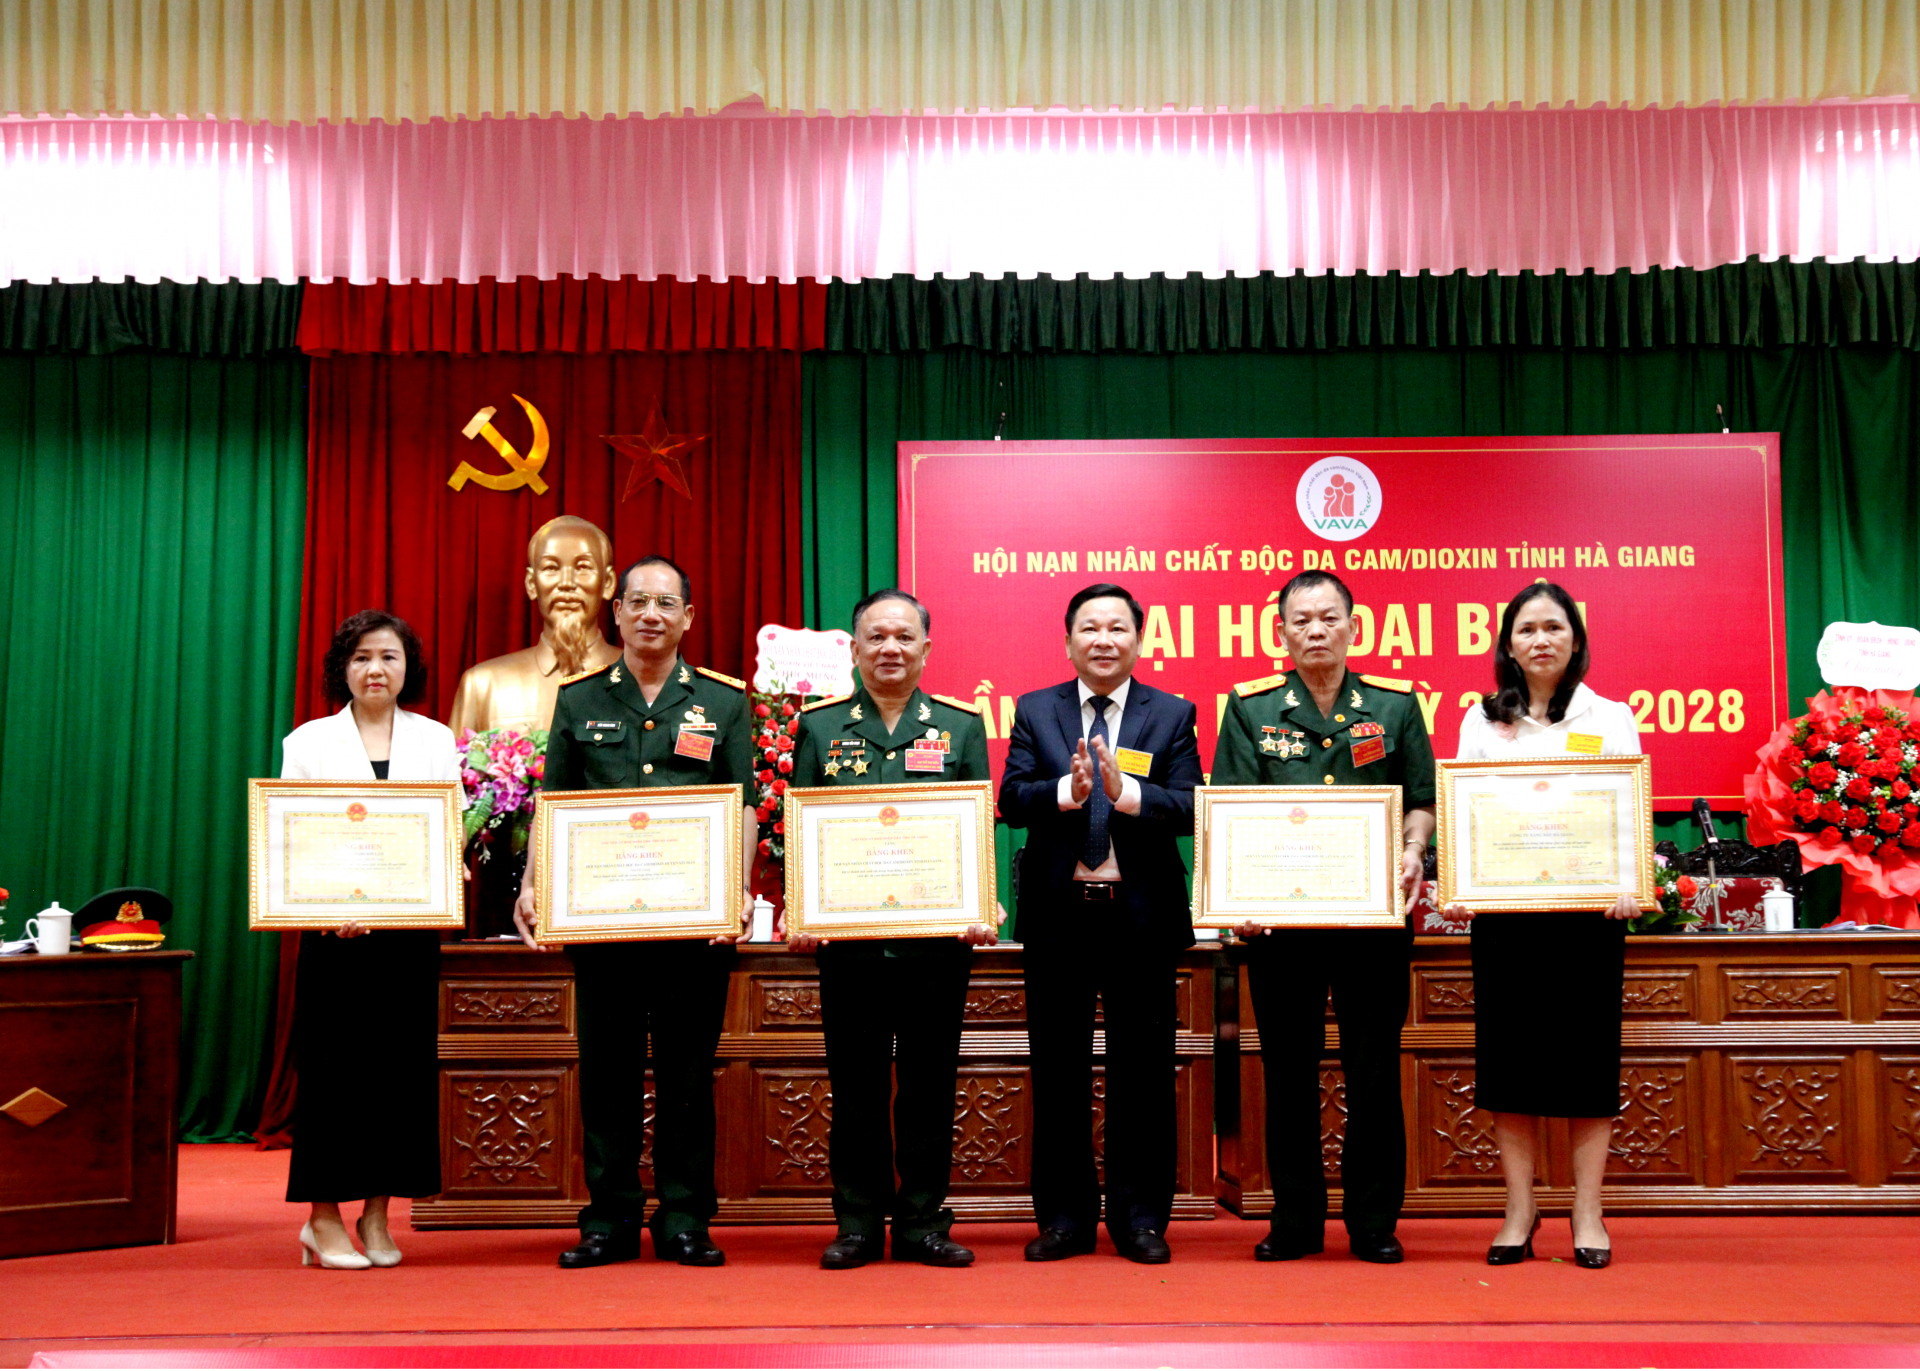 Phó Chủ tịch HĐND tỉnh Hoàng Văn Vịnh trao Bằng khen của Chủ tịch UBND tỉnh cho các tập thể có thành tích xuất sắc trong hoạt động công tác hội nhiệm kỳ 2018 – 2023.